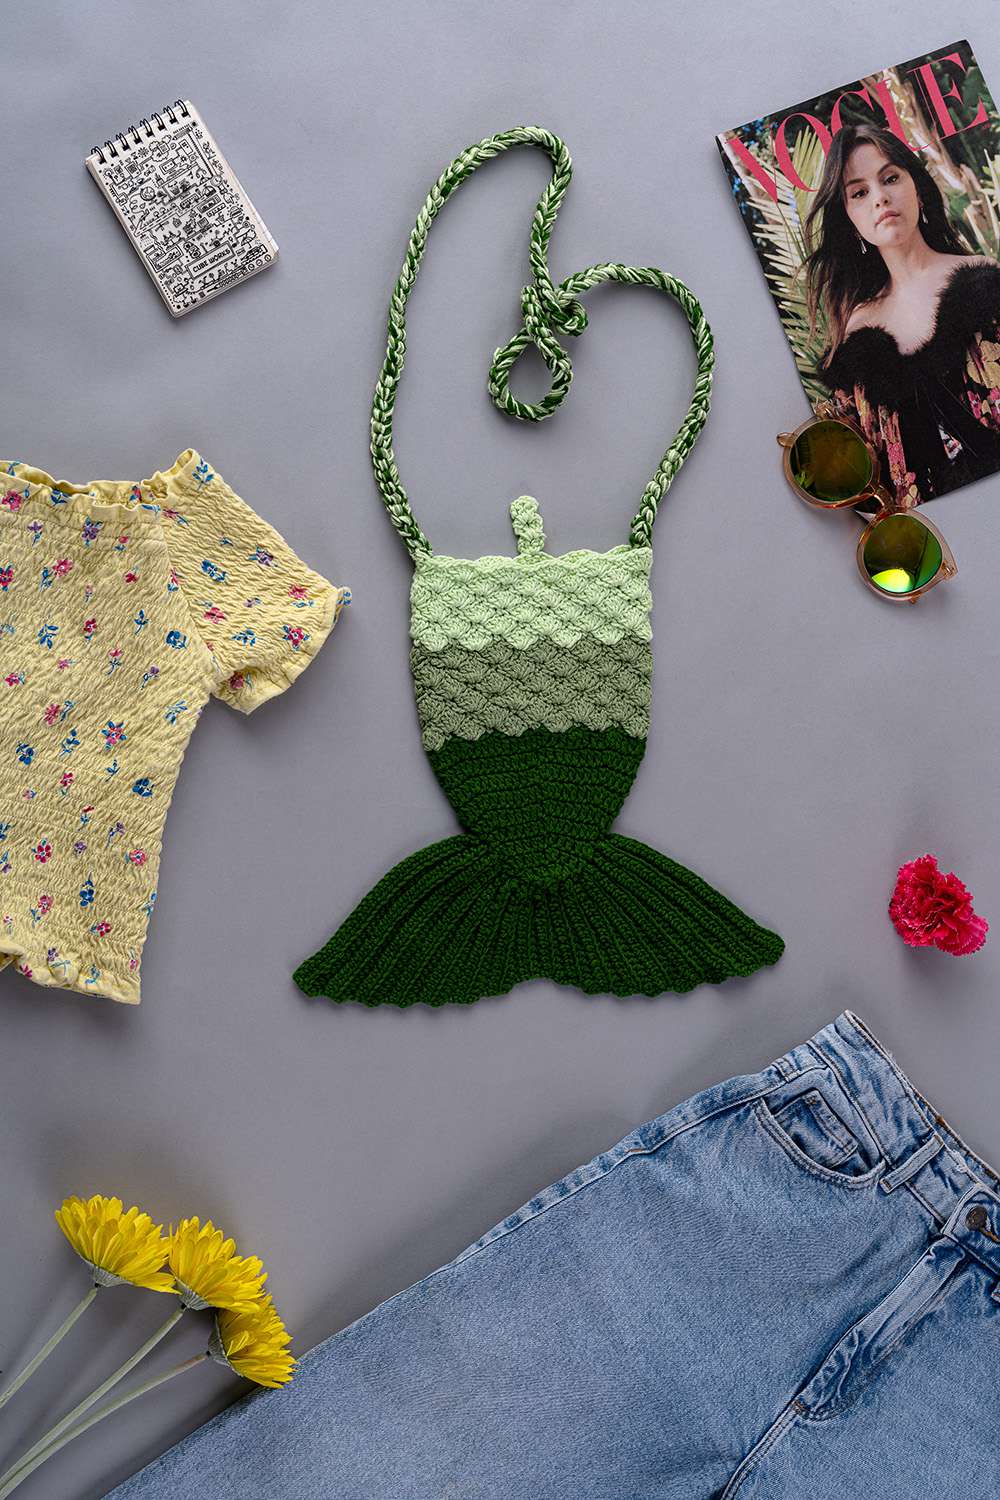 Buy Crochet Bags In India at Best Price - Crochet Green Mermaid Bag